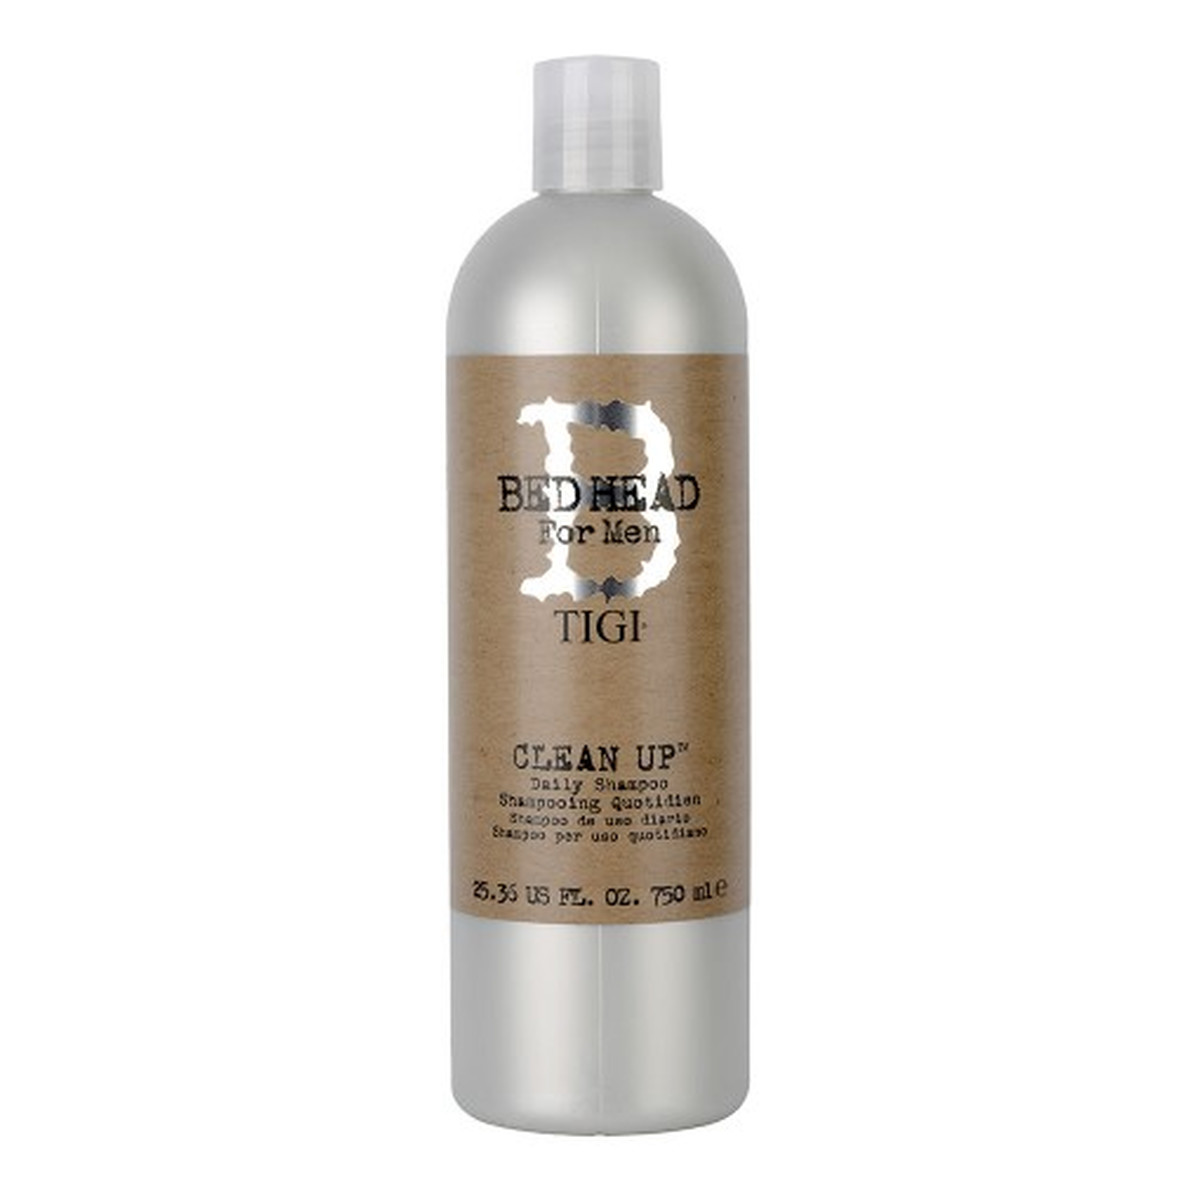 Tigi Bed head for men clean up daily shampoo szampon do włosów dla mężczyzn 750ml